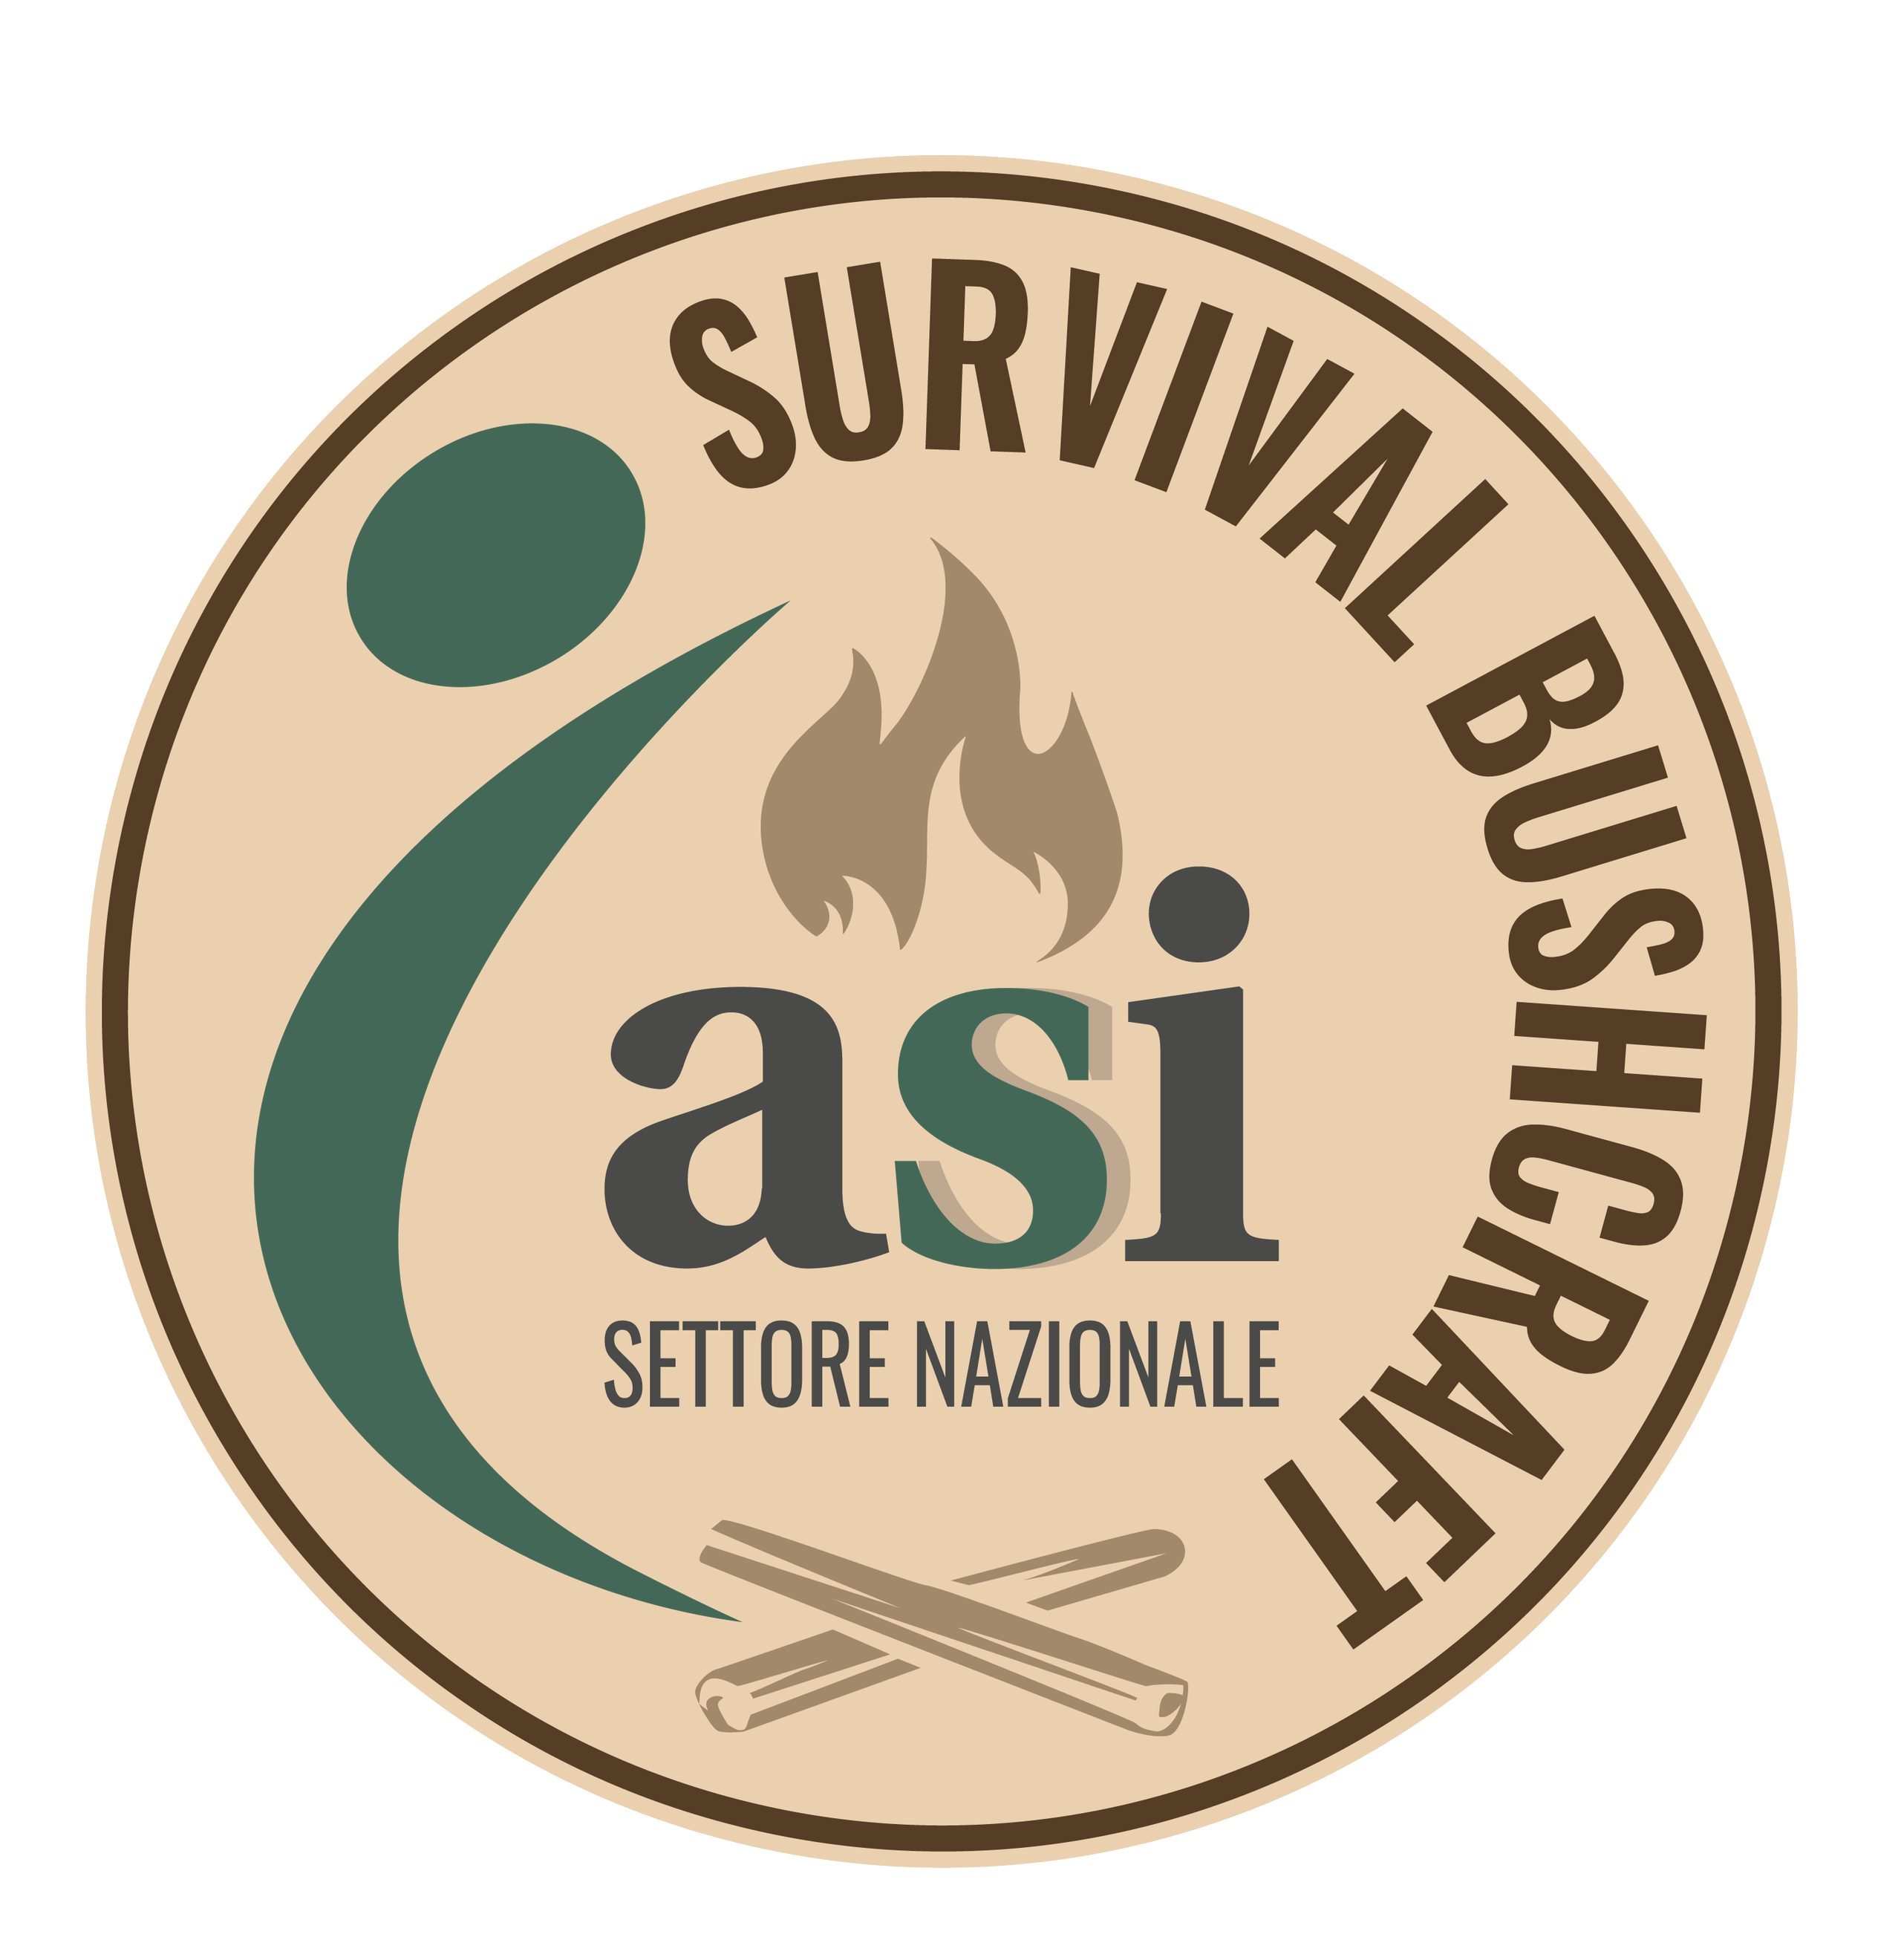 Asi Survival Bushcraft Settore Nazionale